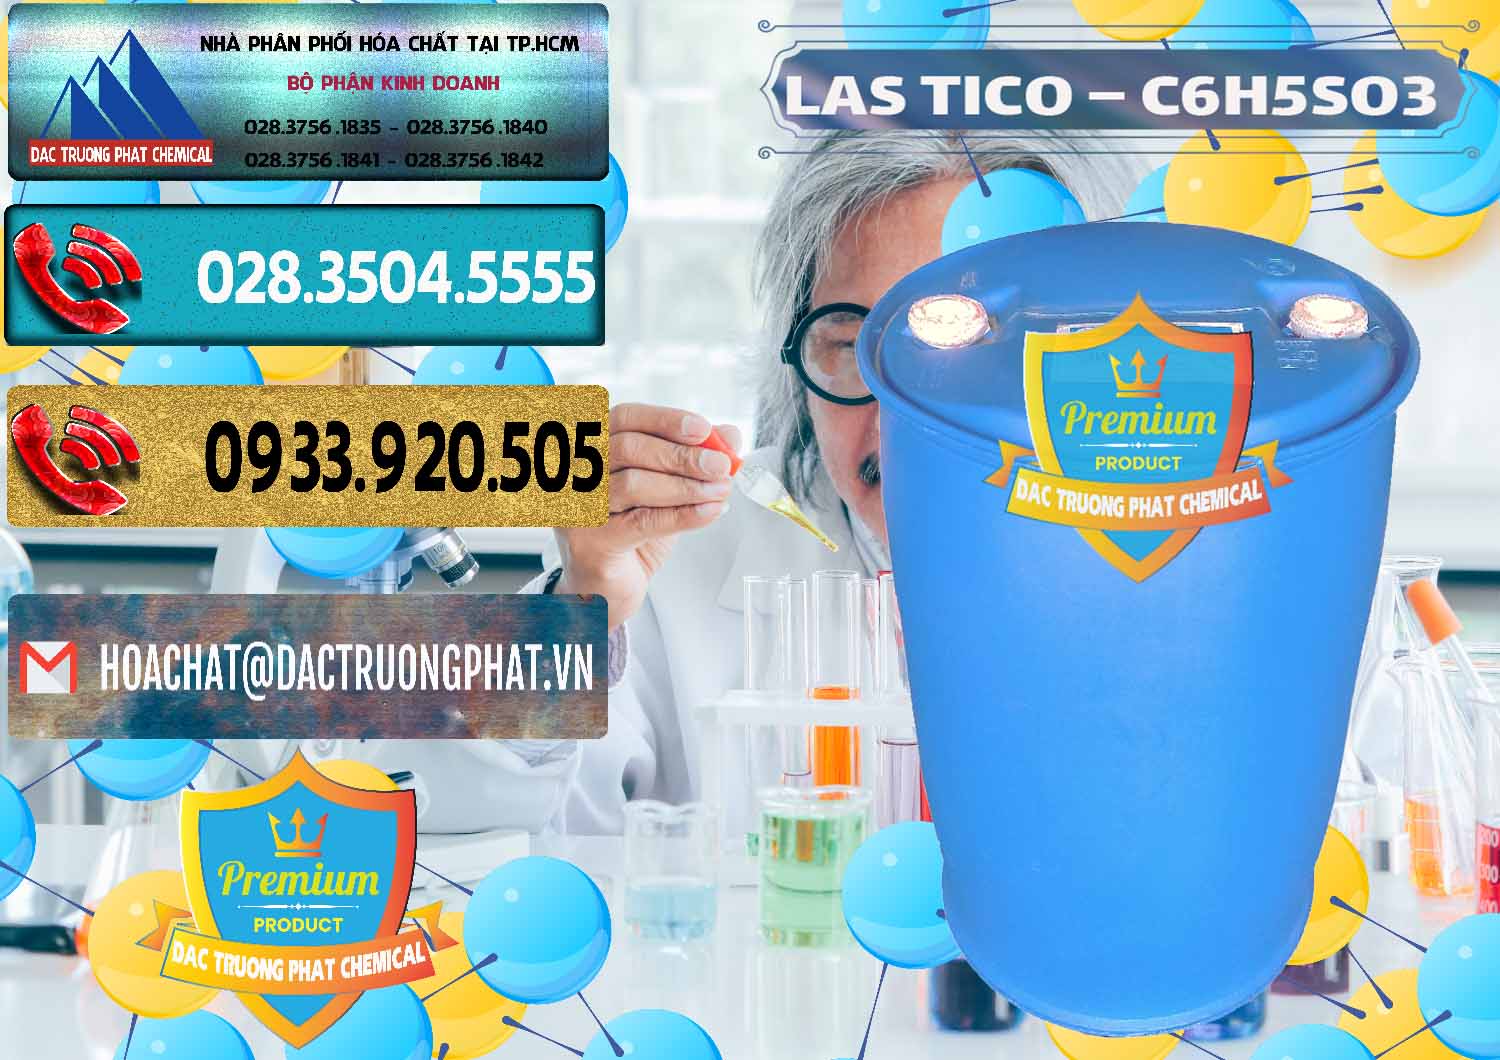 Nơi cung ứng _ bán Chất tạo bọt Las H Tico Việt Nam - 0190 - Chuyên bán _ phân phối hóa chất tại TP.HCM - hoachatdetnhuom.com